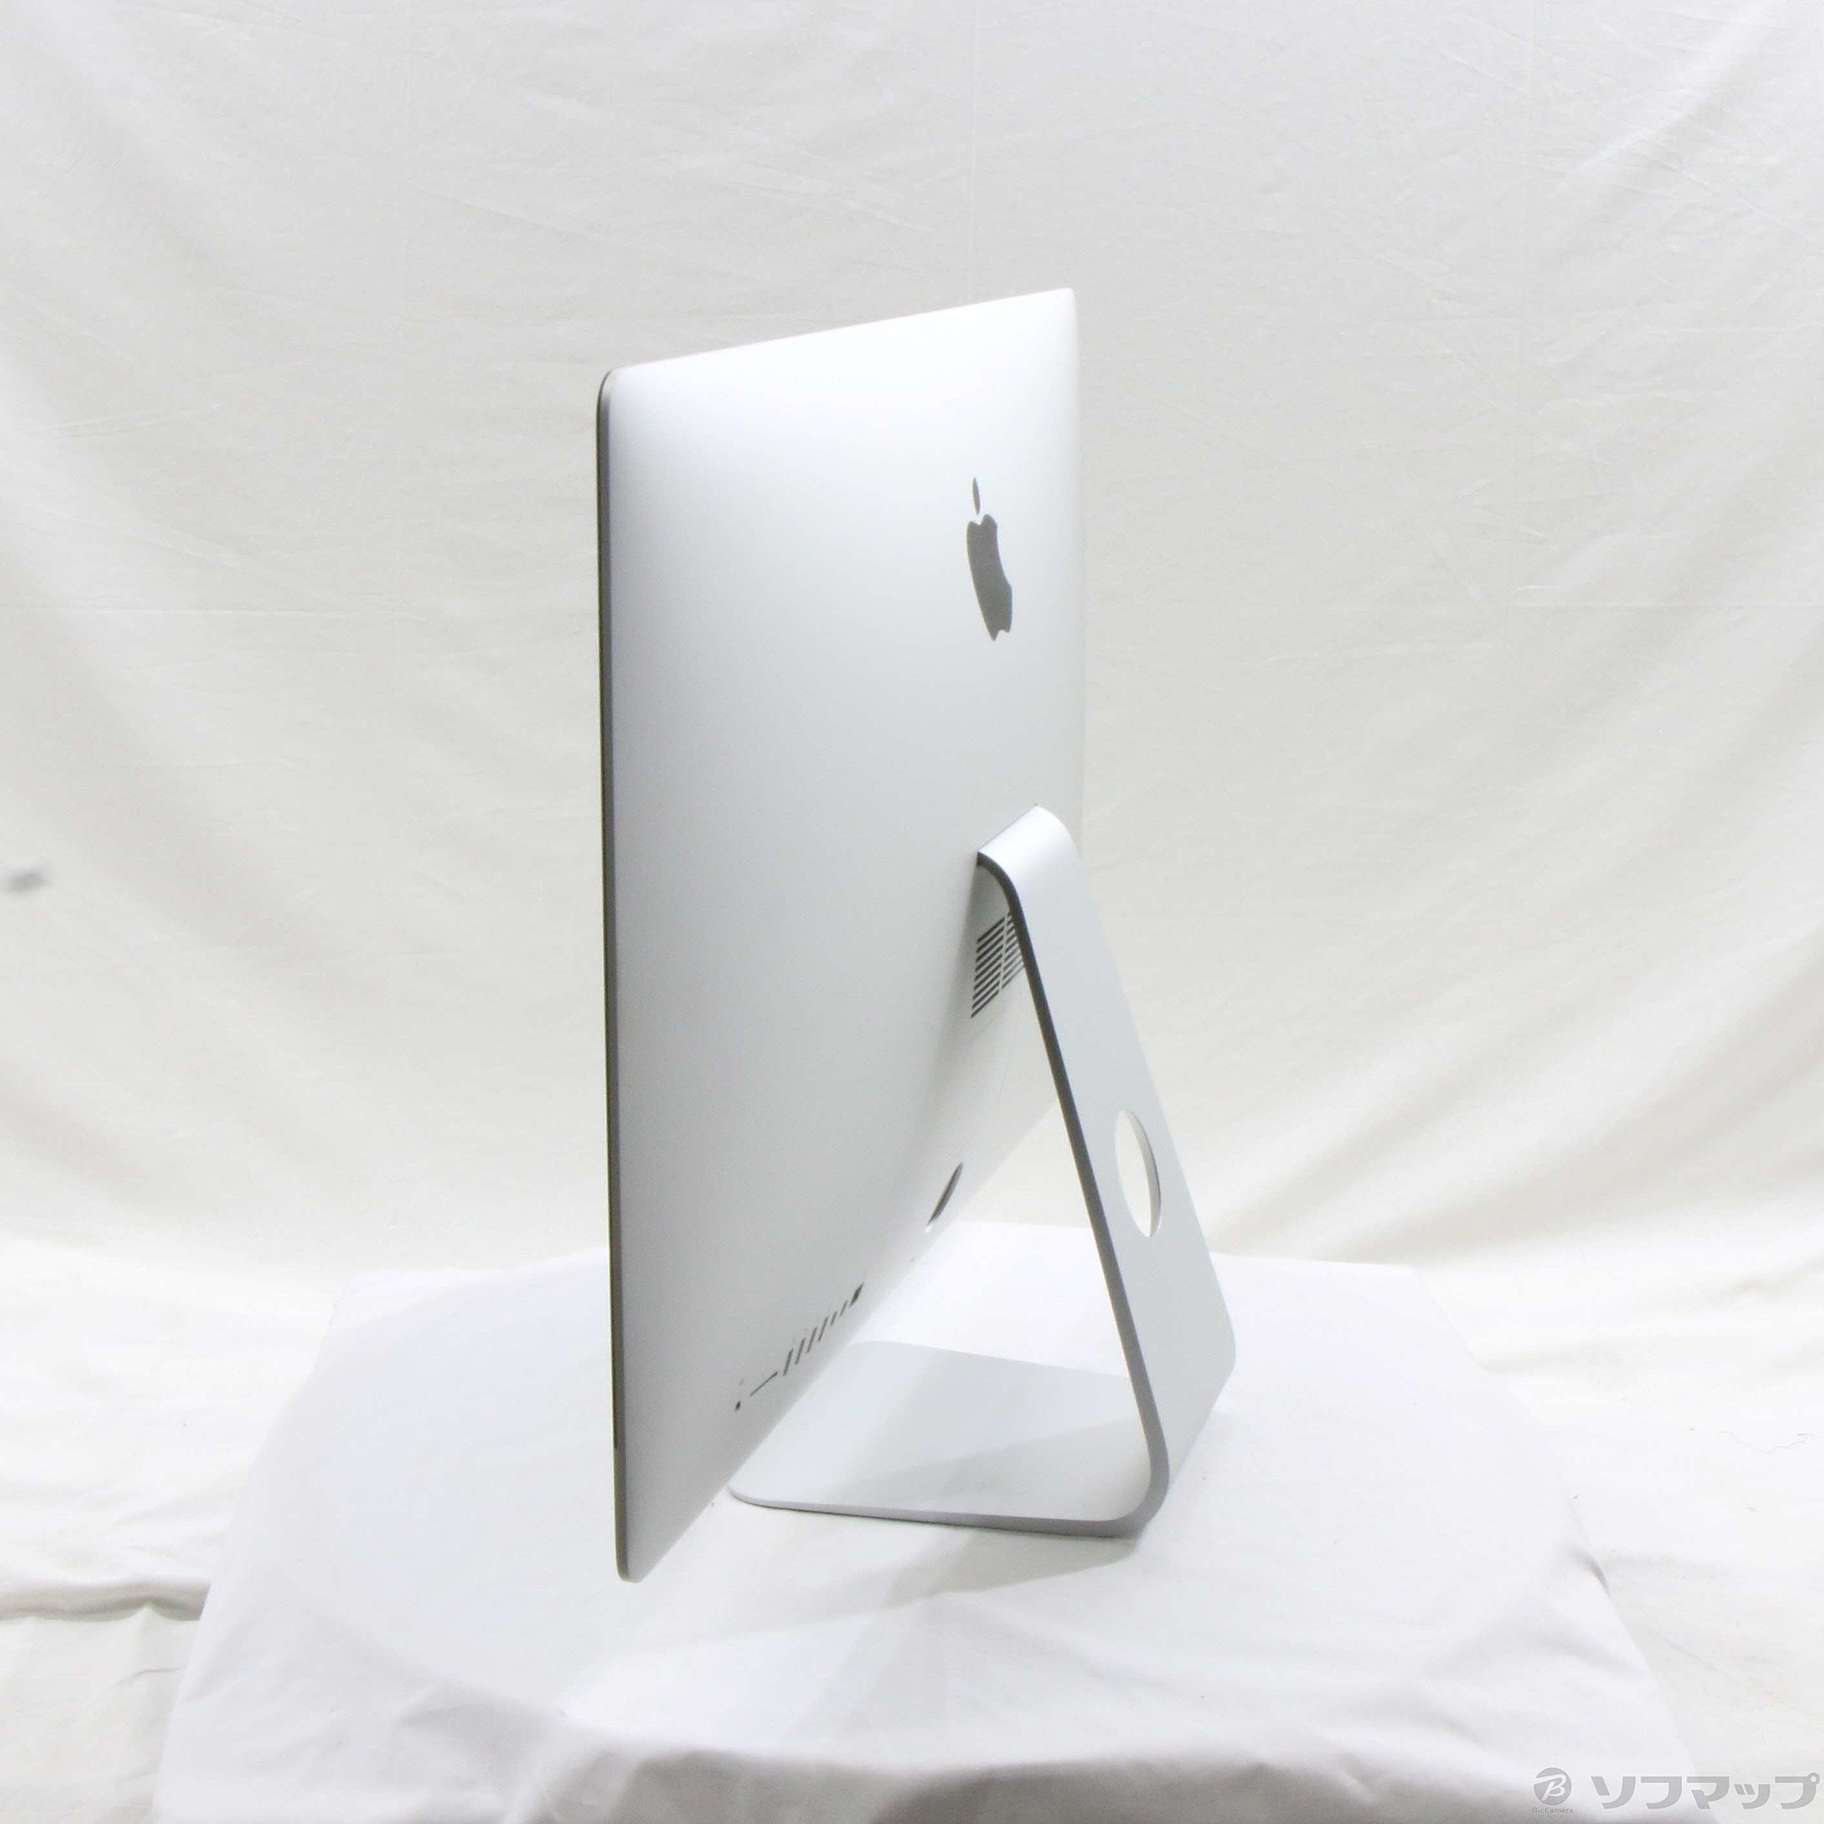 iMac 27インチ Late 2013